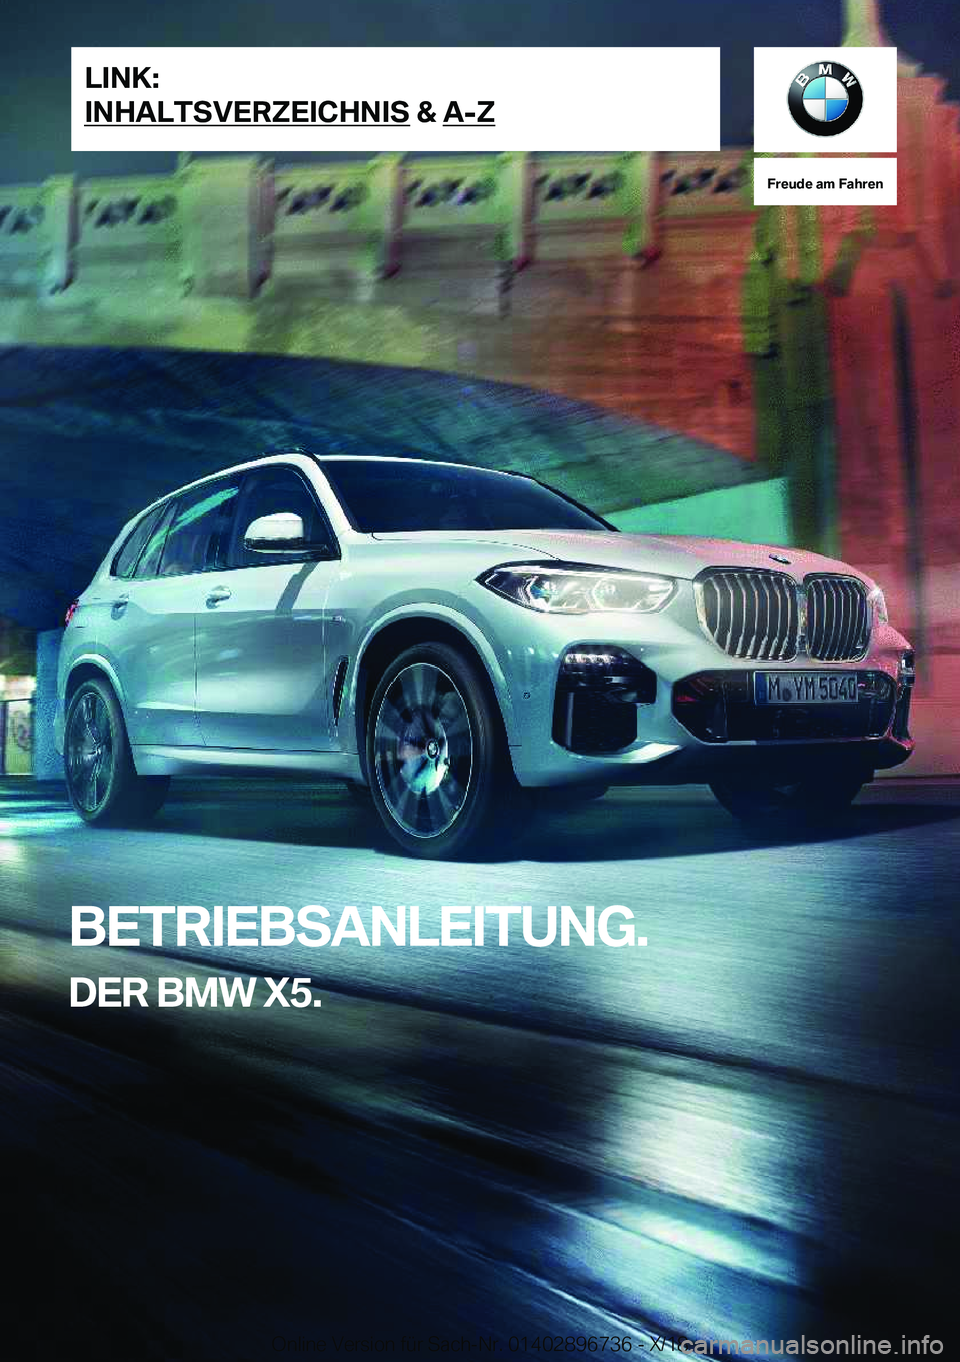 BMW X5 2019  Betriebsanleitungen (in German) �F�r�e�u�d�e��a�m��F�a�h�r�e�n
�B�E�T�R�I�E�B�S�A�N�L�E�I�T�U�N�G�.�D�E�R��B�M�W��X�5�.�L�I�N�K�:
�I�N�H�A�L�T�S�V�E�R�Z�E�I�C�H�N�I�S��&��A�-�Z�O�n�l�i�n�e��V�e�r�s�i�o�n��f�